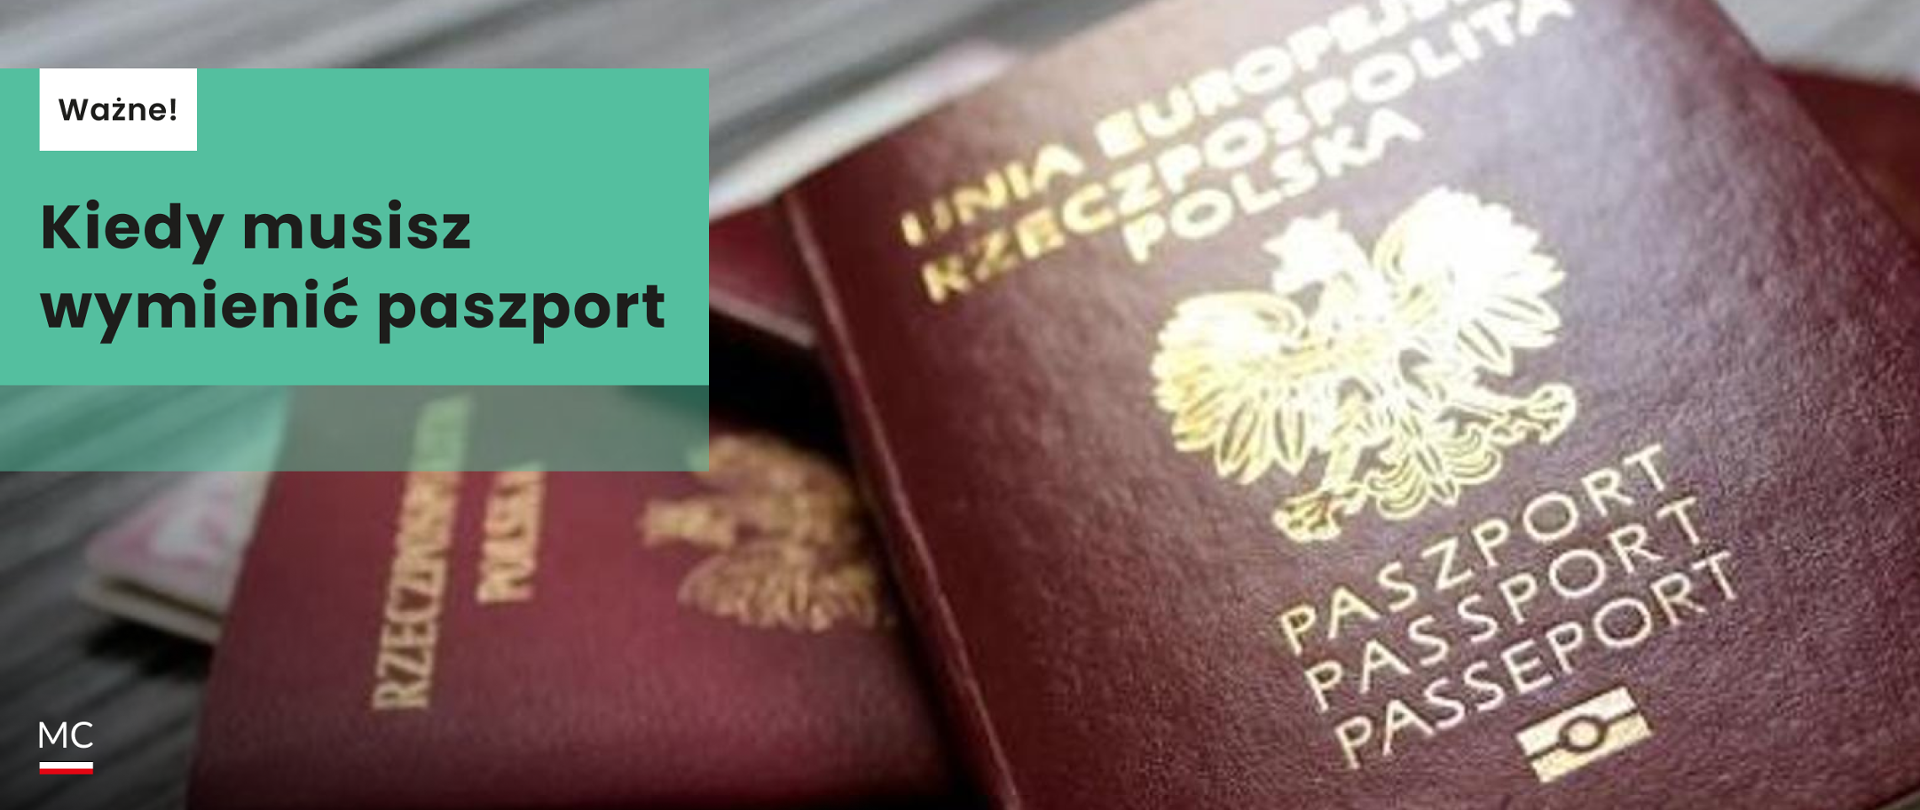 wymiana paszportu